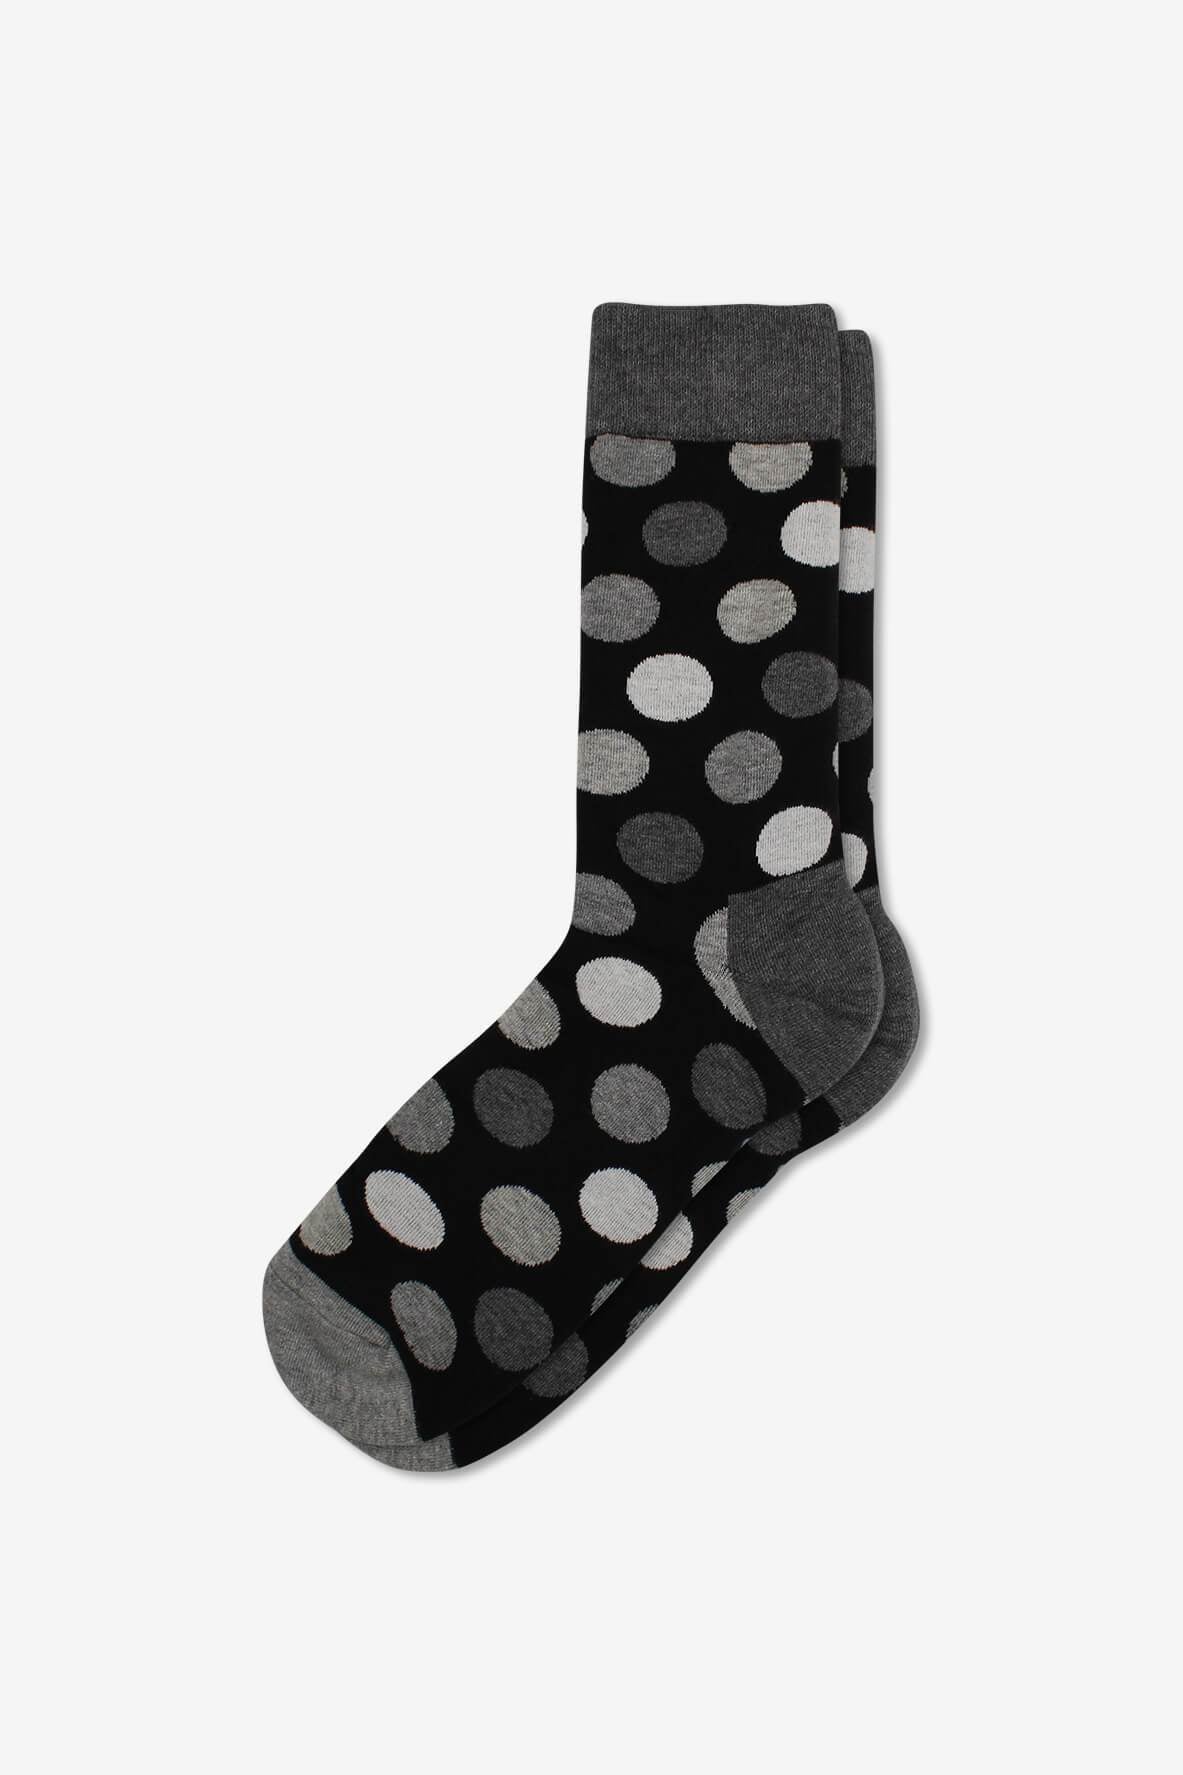 Socks IMG_5355, socks, GoTie